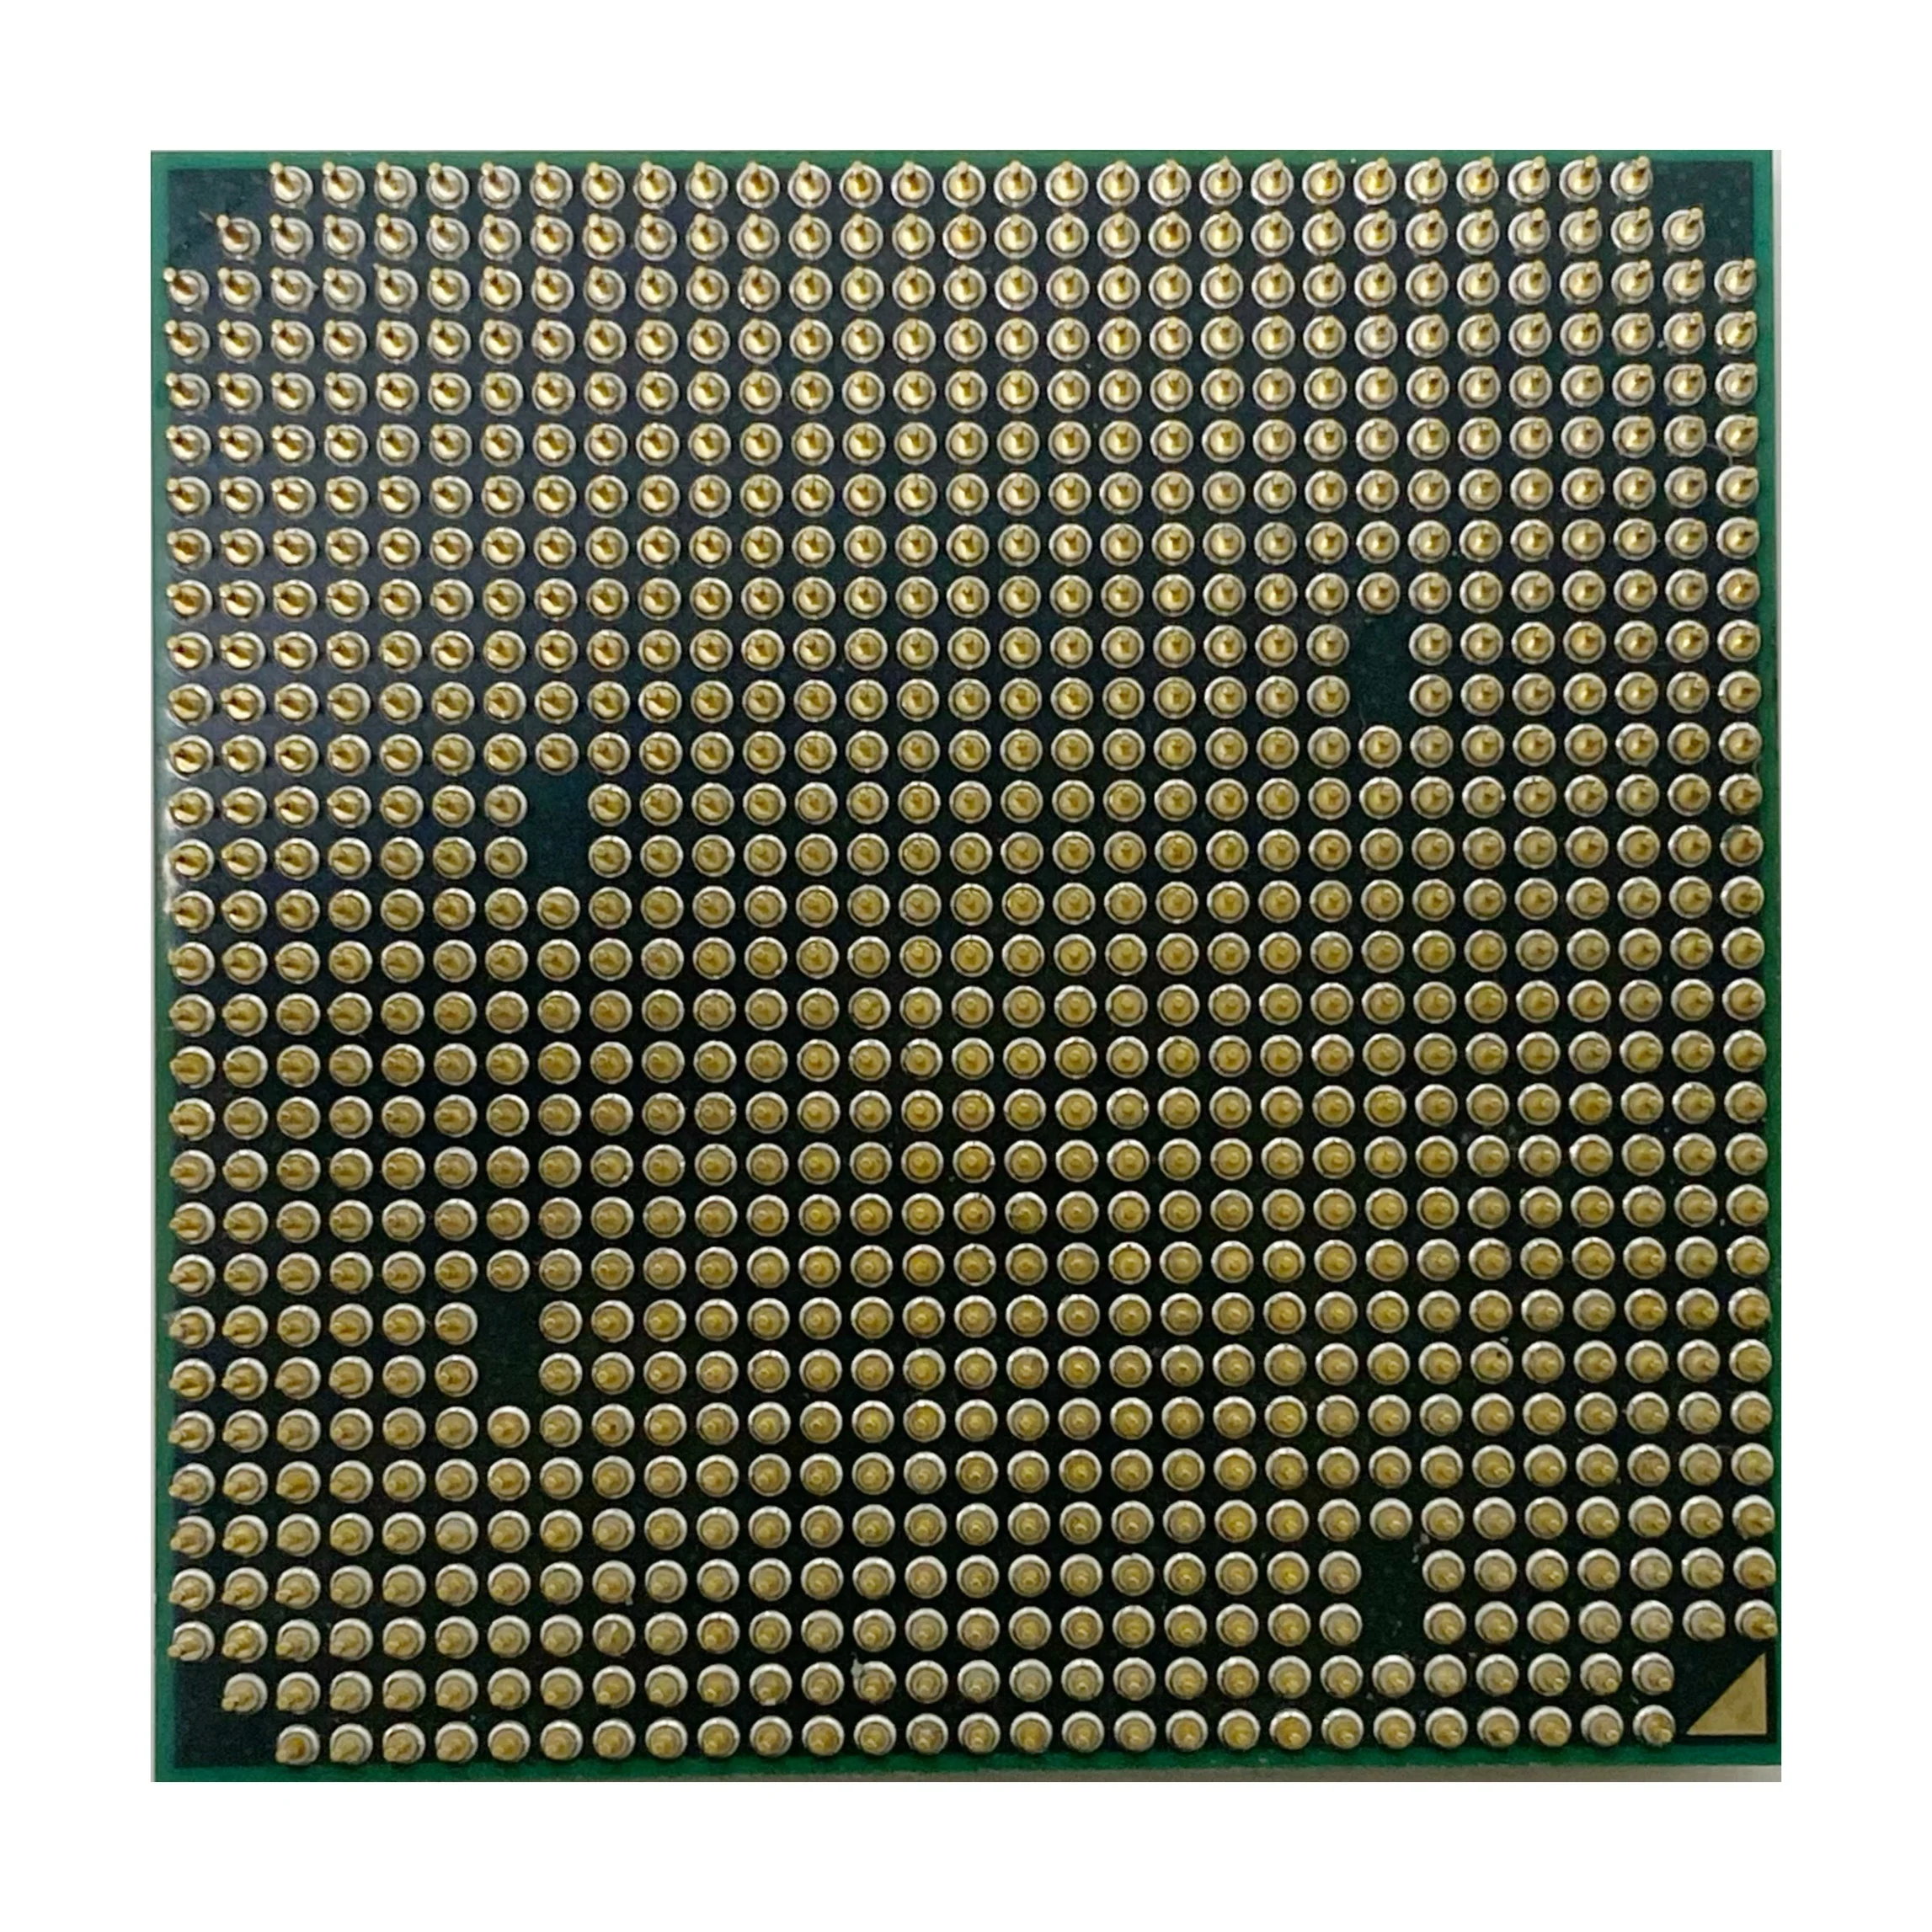 Процессор AMD FX-Series FX4100 FX-4100 FX 4100 3 6 ГГц четырехъядерный центральный процессор